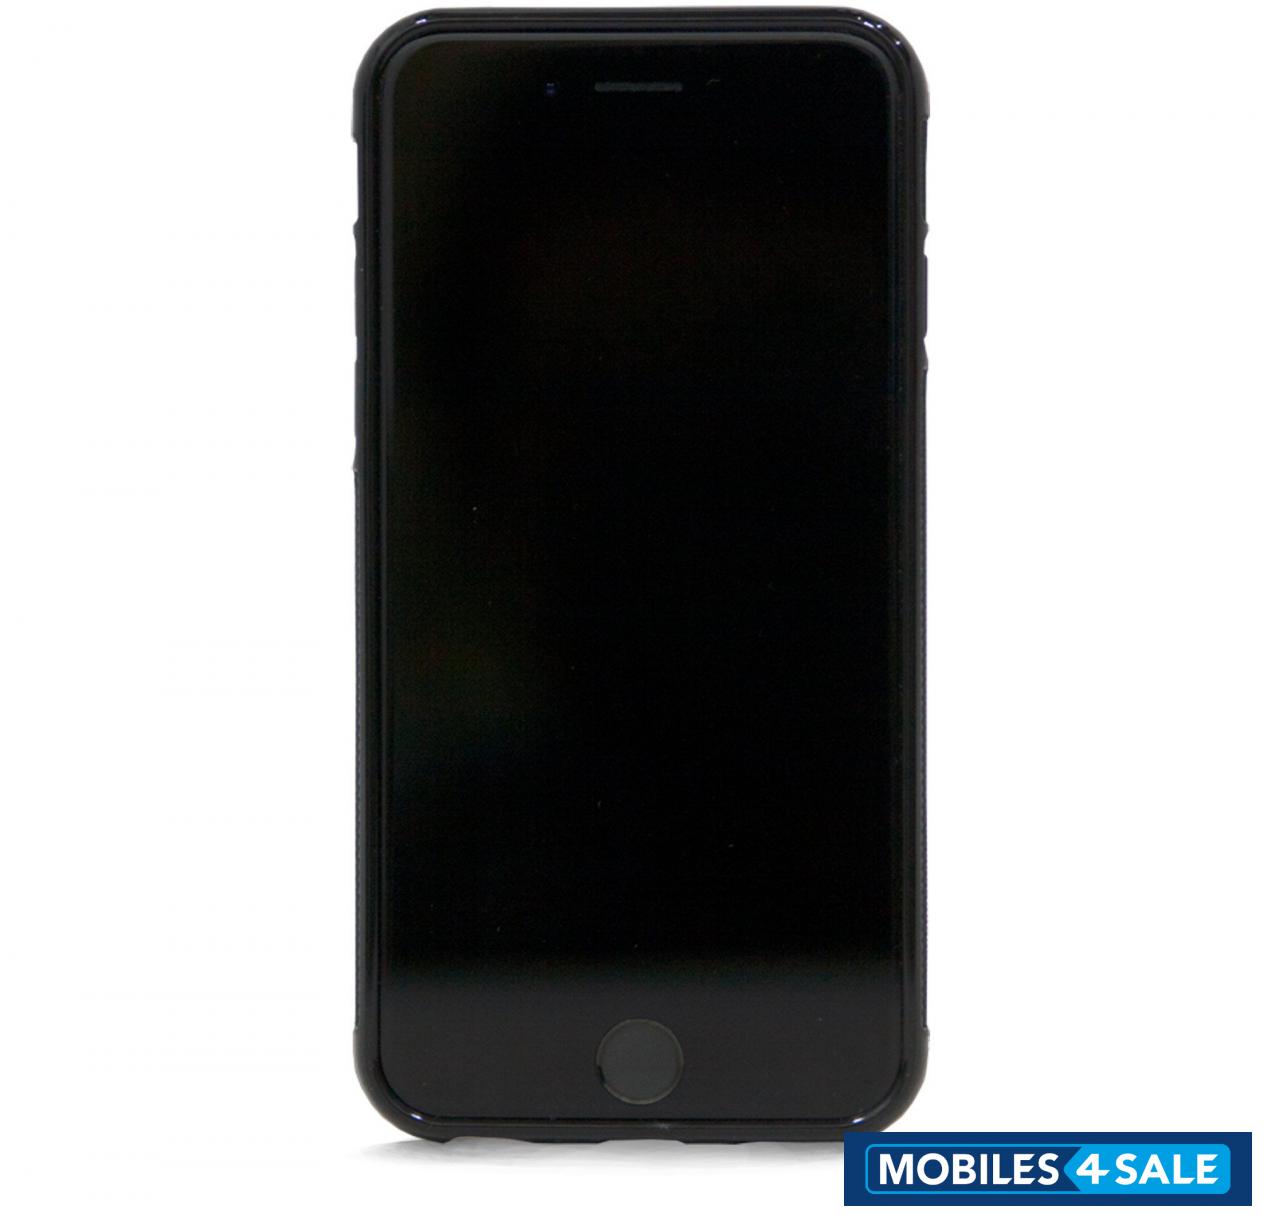 Black Apple iPhone 7 Plus